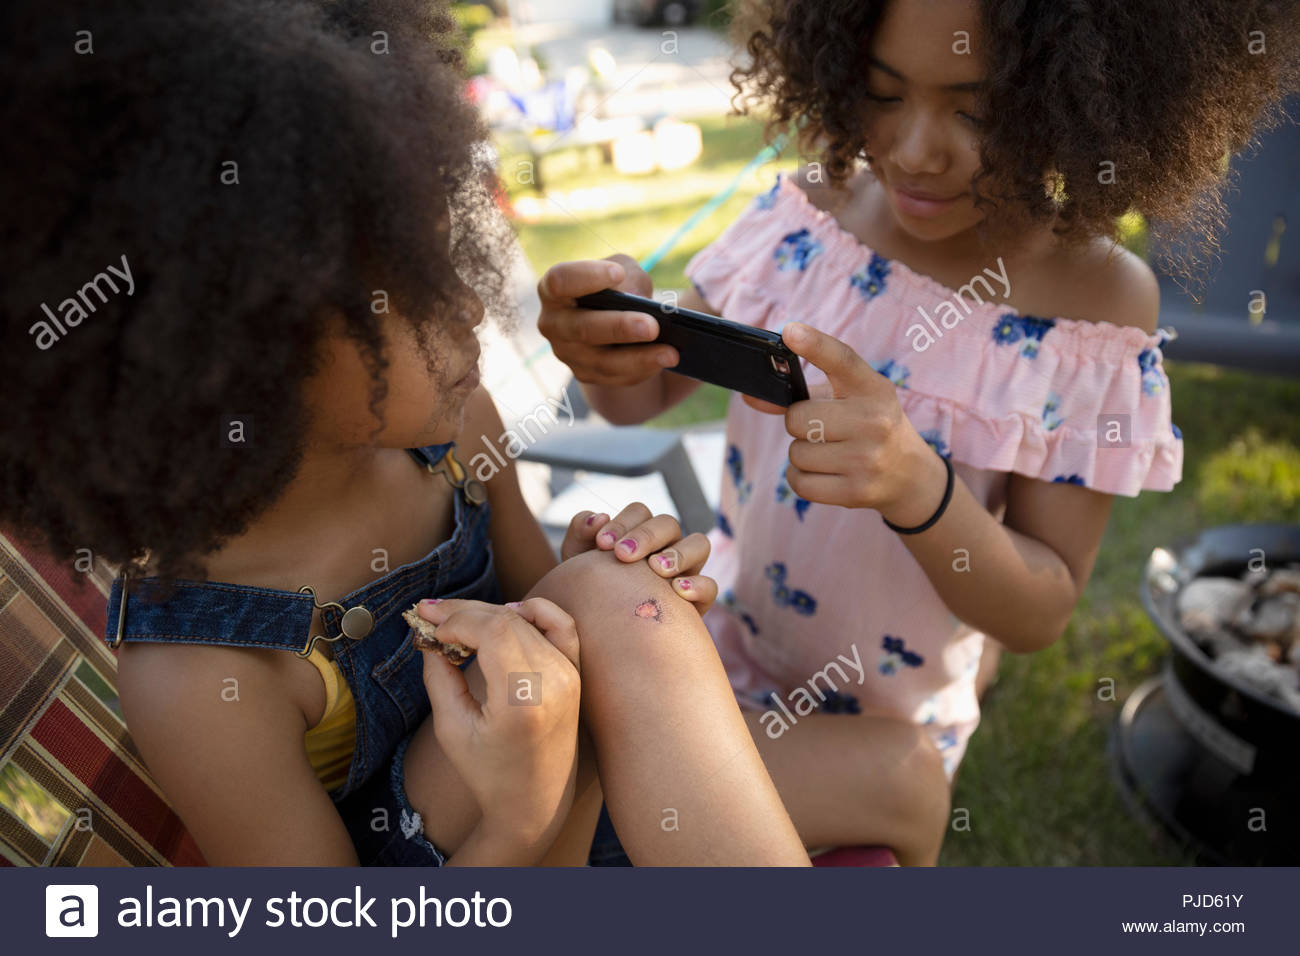 Fille avec téléphone appareil photo photographier avec soeur genou écorché Banque D'Images